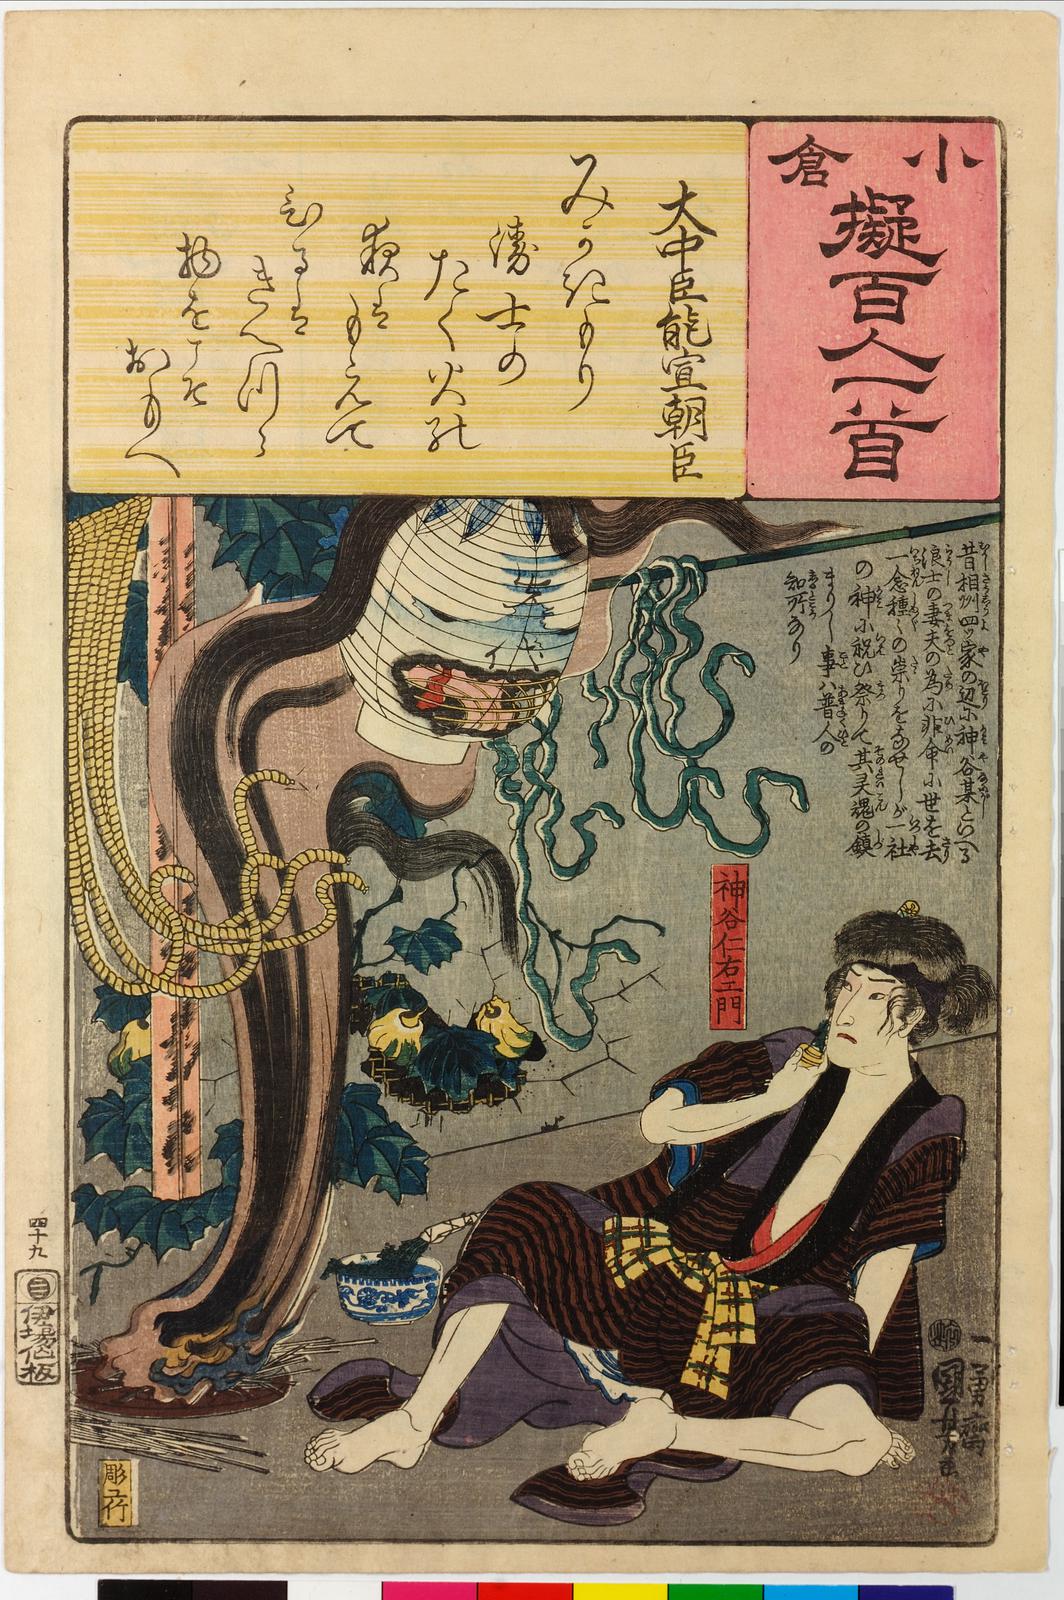 File:Ogura nazorae hyakunin isshu (Ogura Imitation of the Hundred 